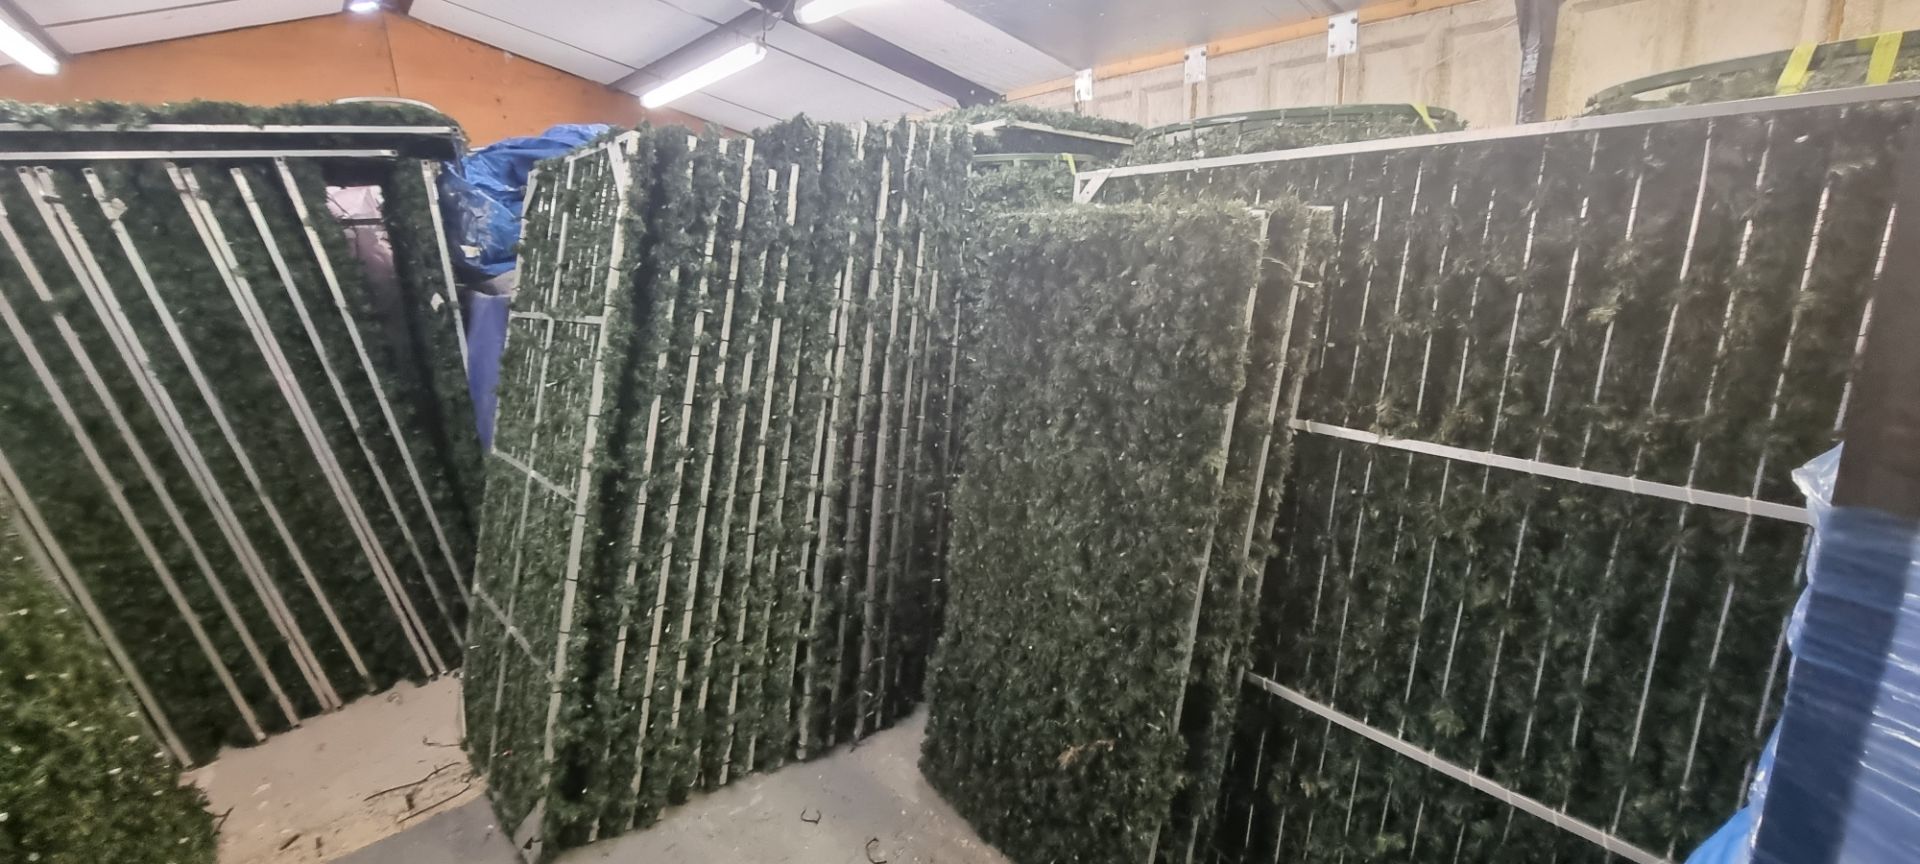 2 x Seasonal Aluminium Panels with Green Garland